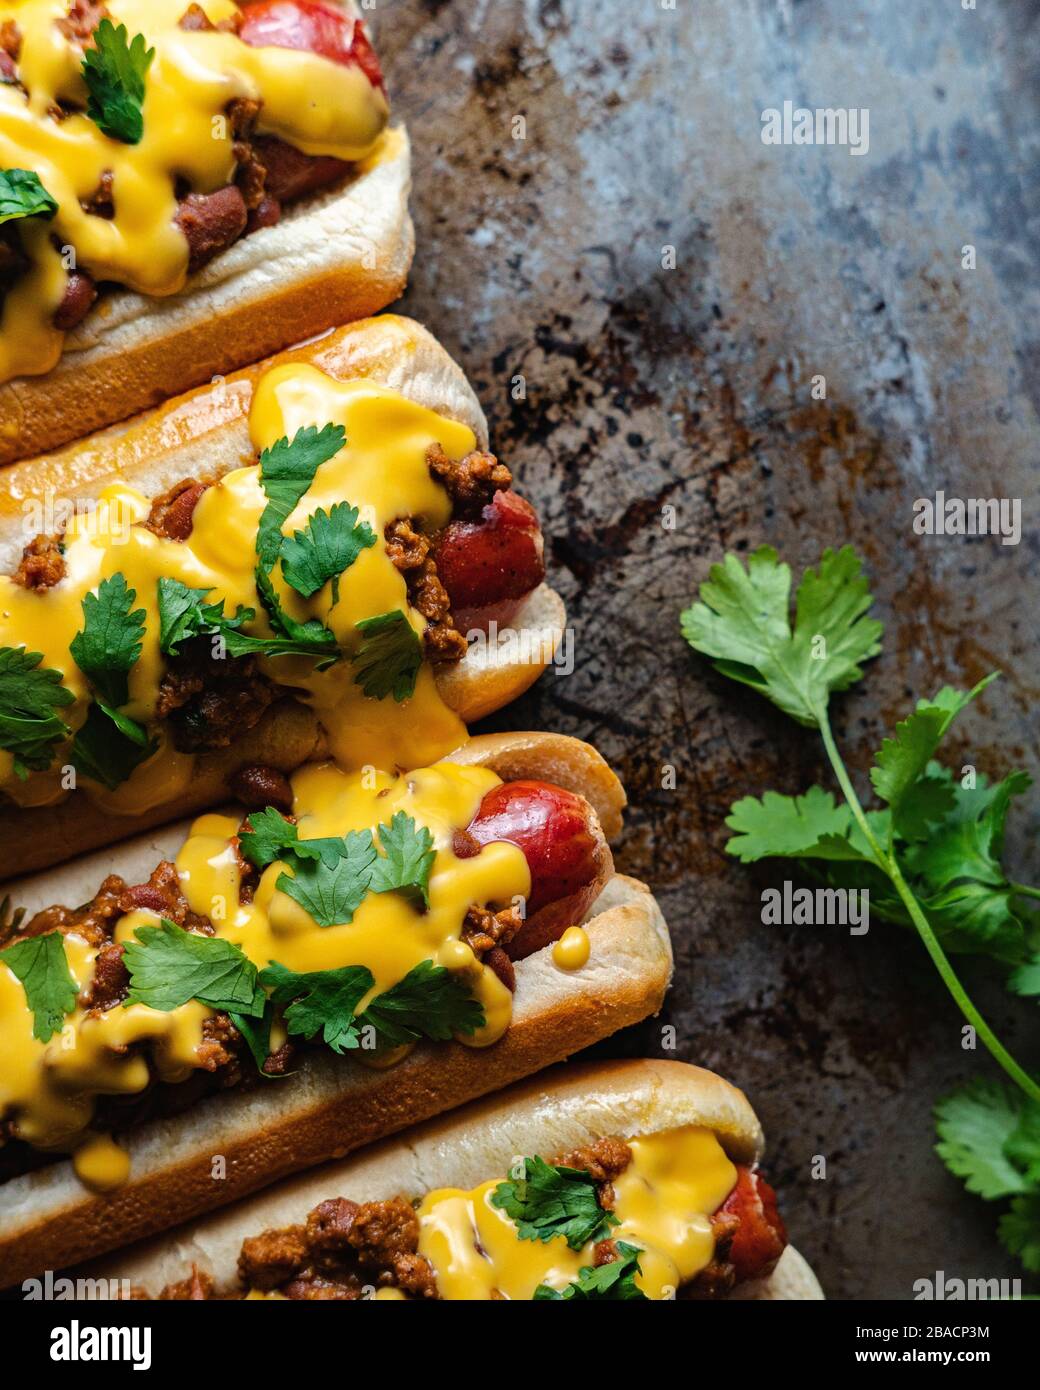 Gros plan vertical grand angle de délicieux hot dogs avec sauce moutarde jaune Banque D'Images